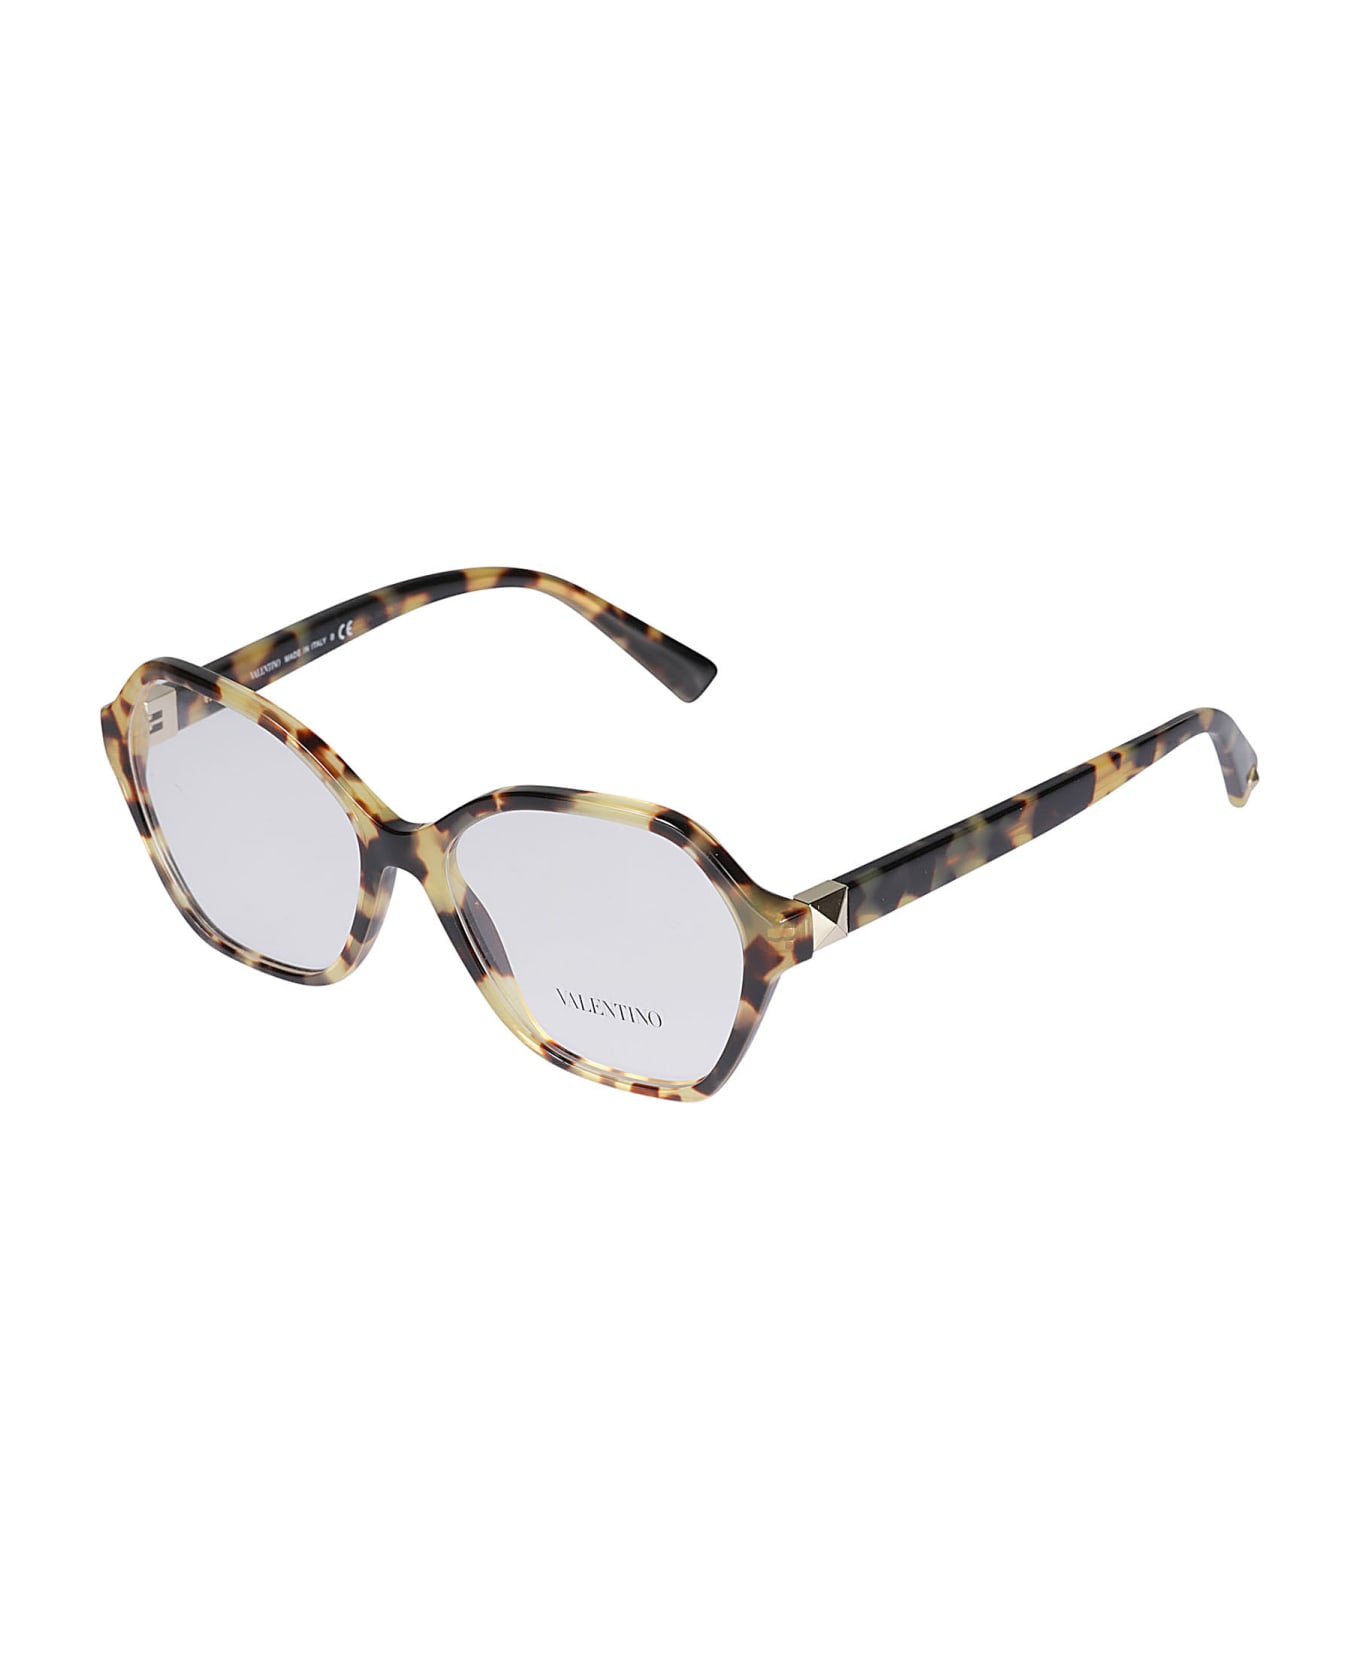 Valentino Eyewear Vista5036 Glasses - 5036